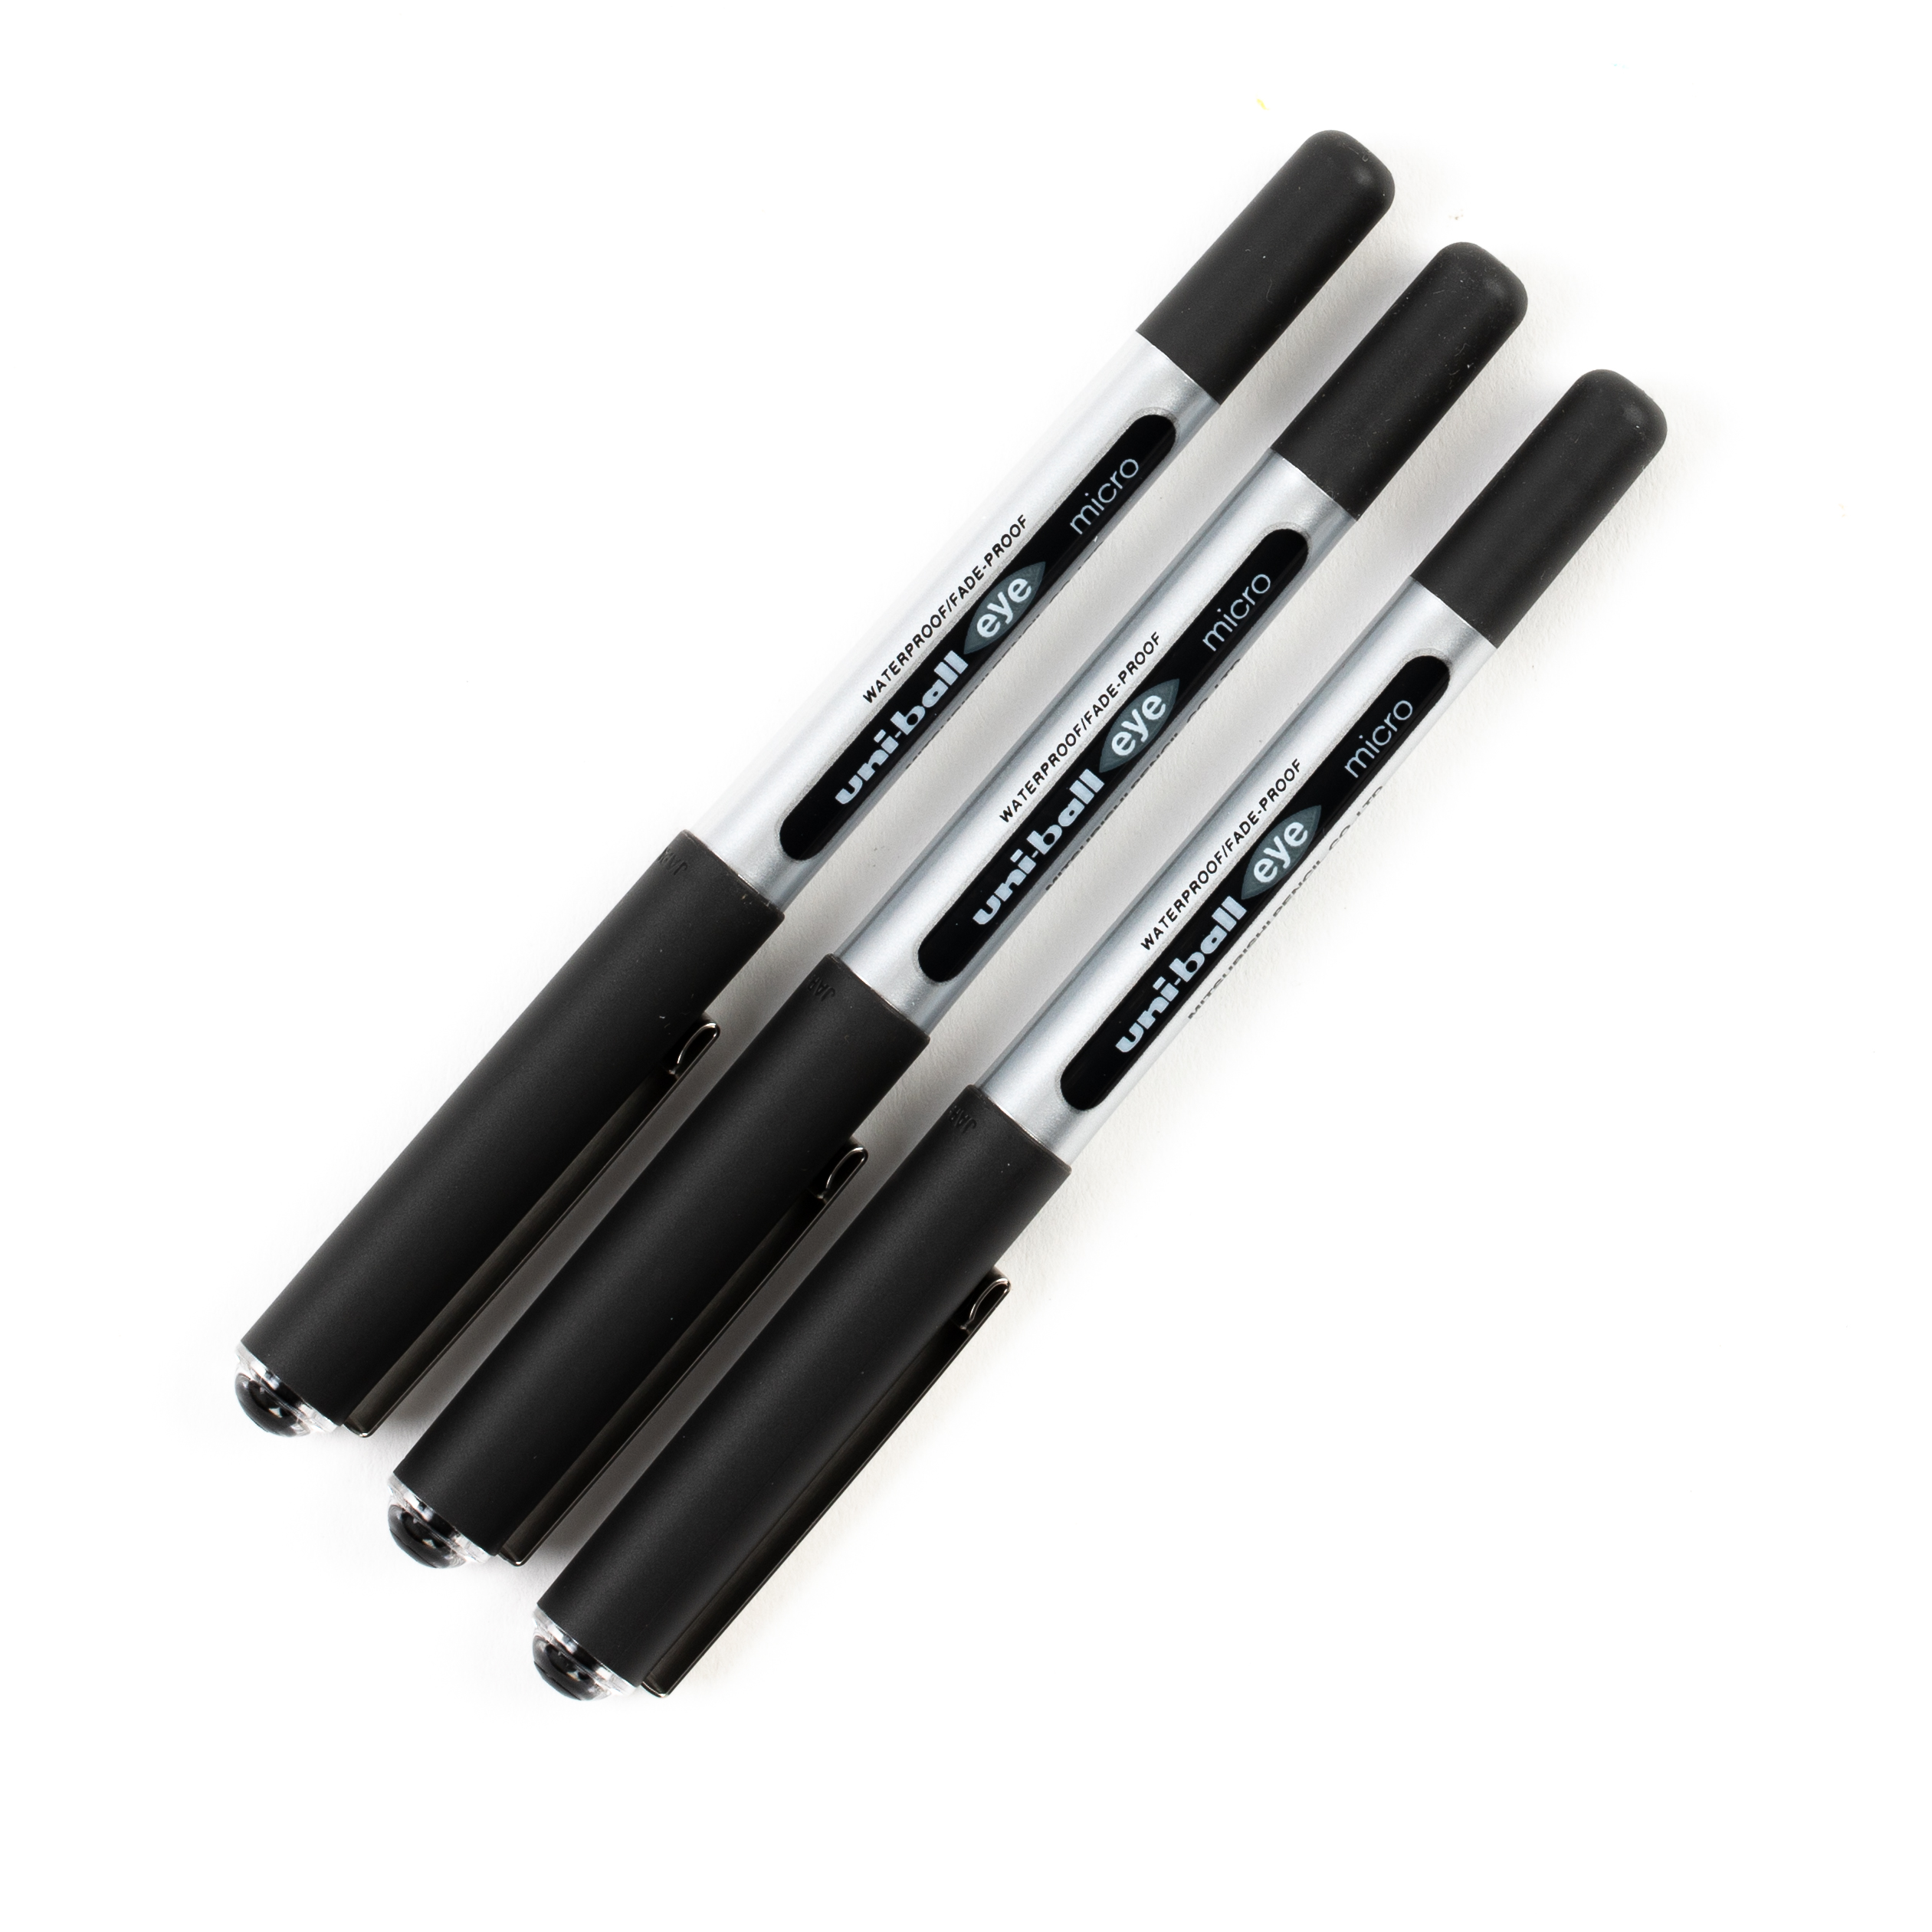 Uni-Ball Eye Micro Blk Pen P3